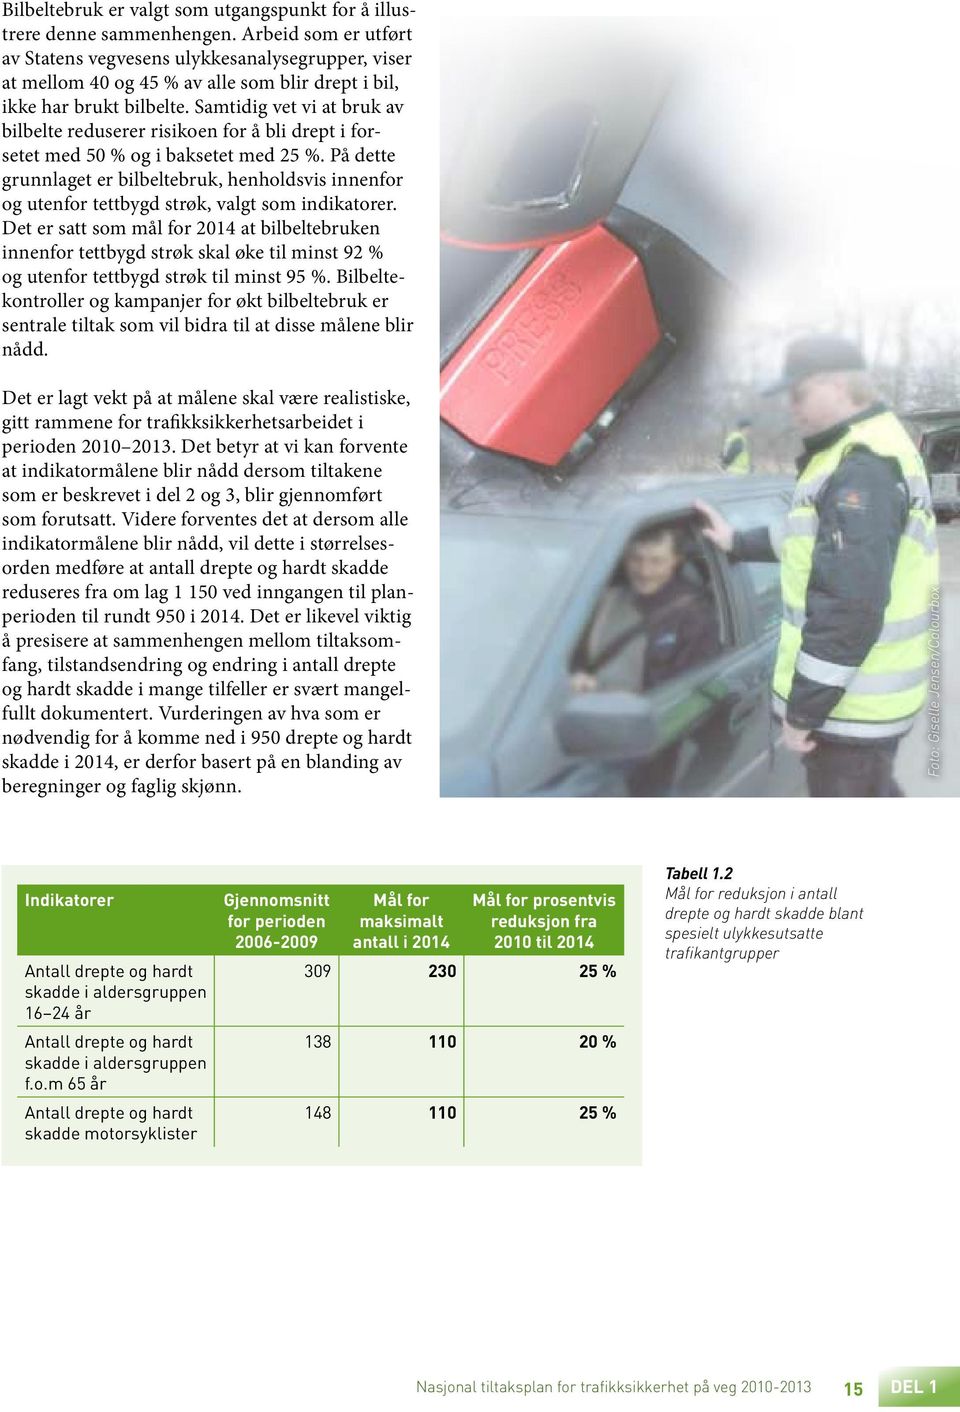 Samtidig vet vi at bruk av bilbelte reduserer risikoen for å bli drept i forsetet med 50 % og i baksetet med 25 %.